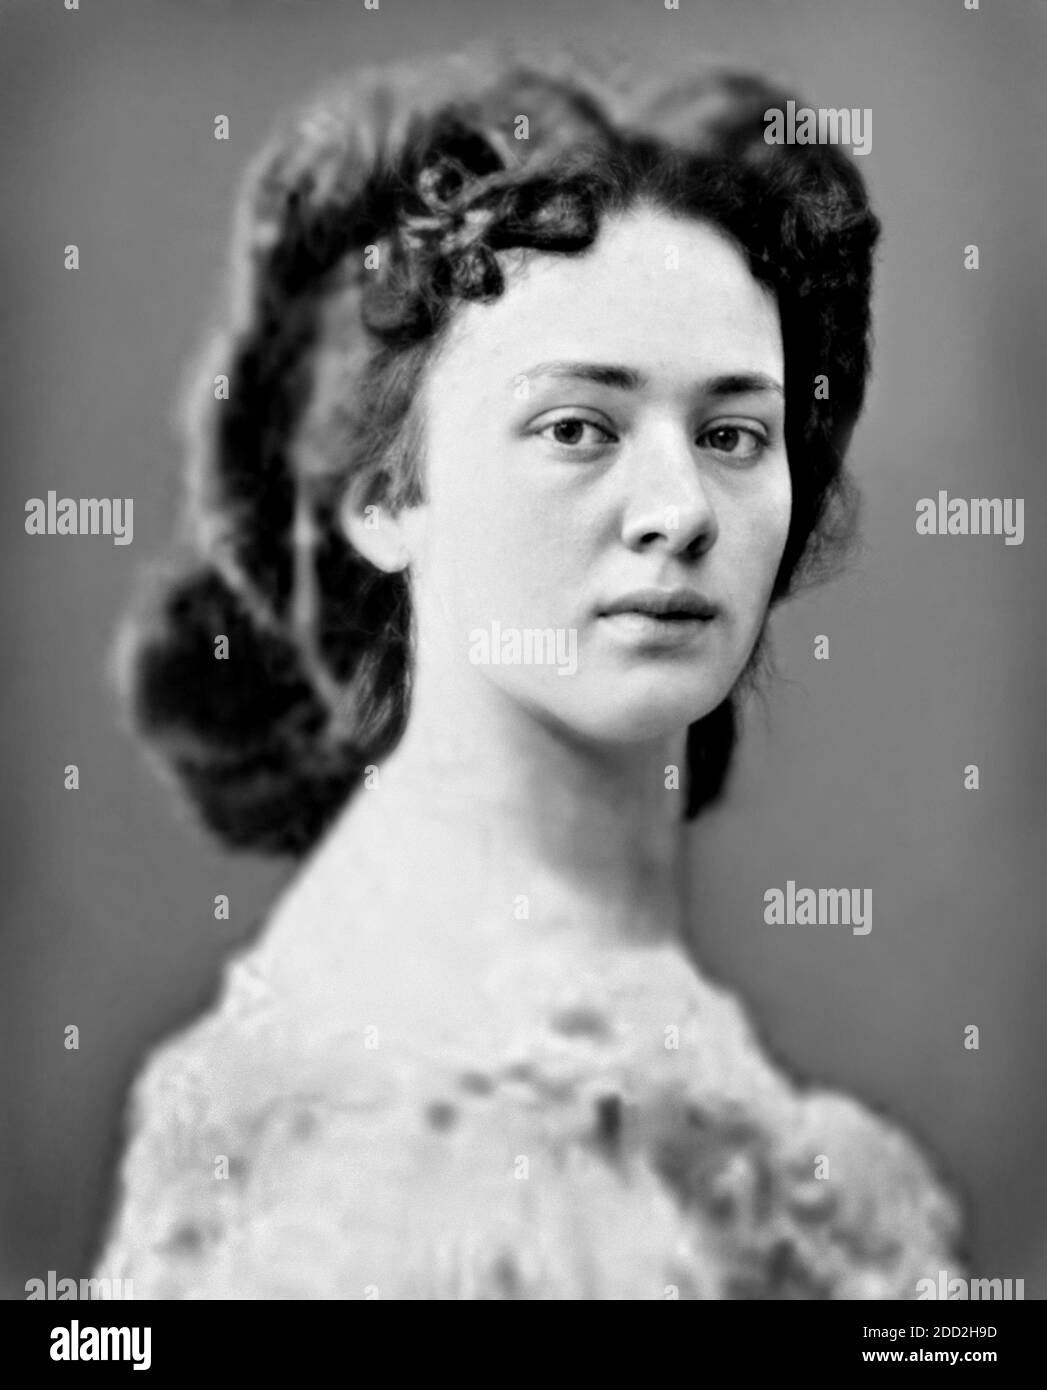 1860 ca. , AUSTRIA : The Baroness Bertha Felicie Sophie von Suttner ( 1843 - 1914 ), born Countess Kinsky in Prague ,  Nobel winner prize for the PEACE in 1905 . Unknown photographer .- HISTORY -  foto storiche - foto storica  - PREMIO NOBEL PER LA PACE - portrait - ritratto  - hat - cappello - AUSTRIA - pacifismo - pacifista  --- Archivio GBB Stock Photo